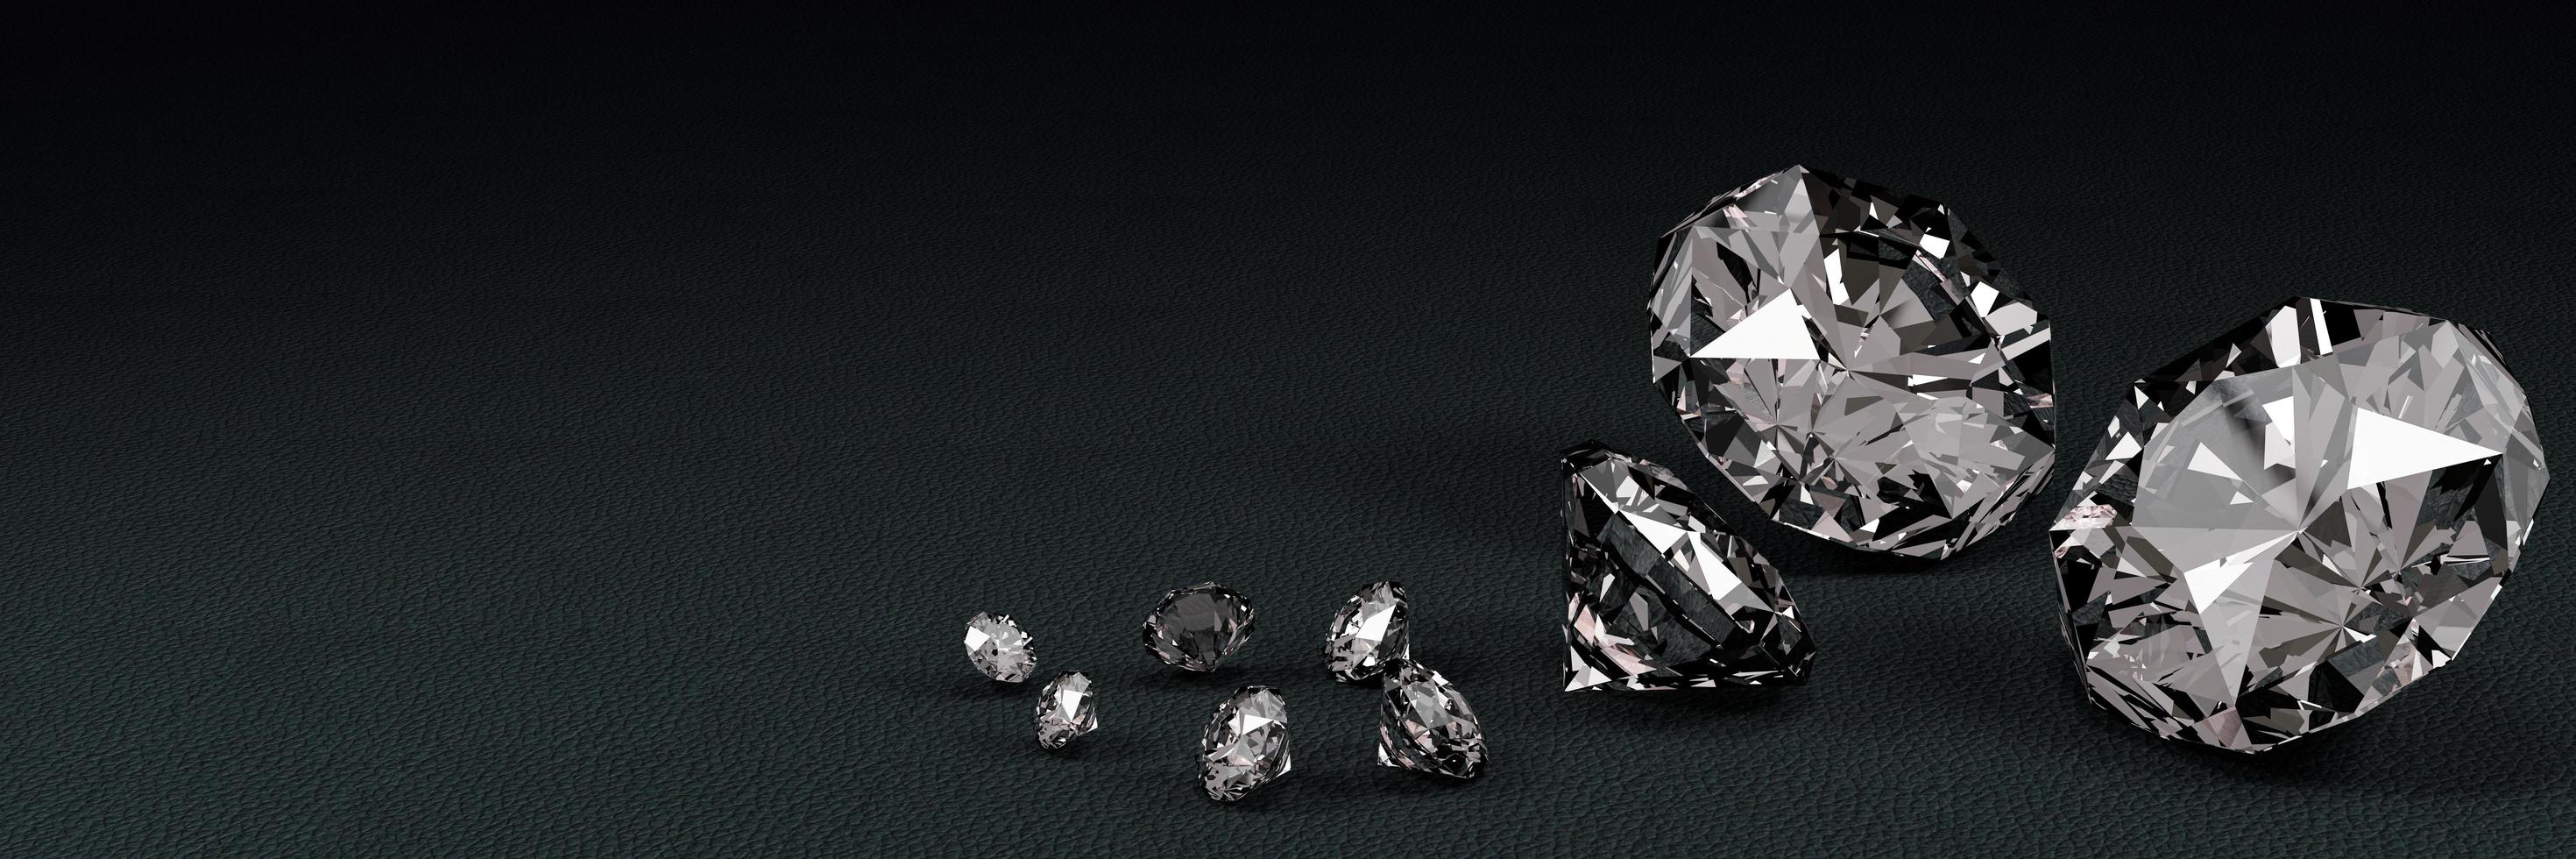 3D-rendering van veel diamanten op een zwart oppervlak met reflectie. foto